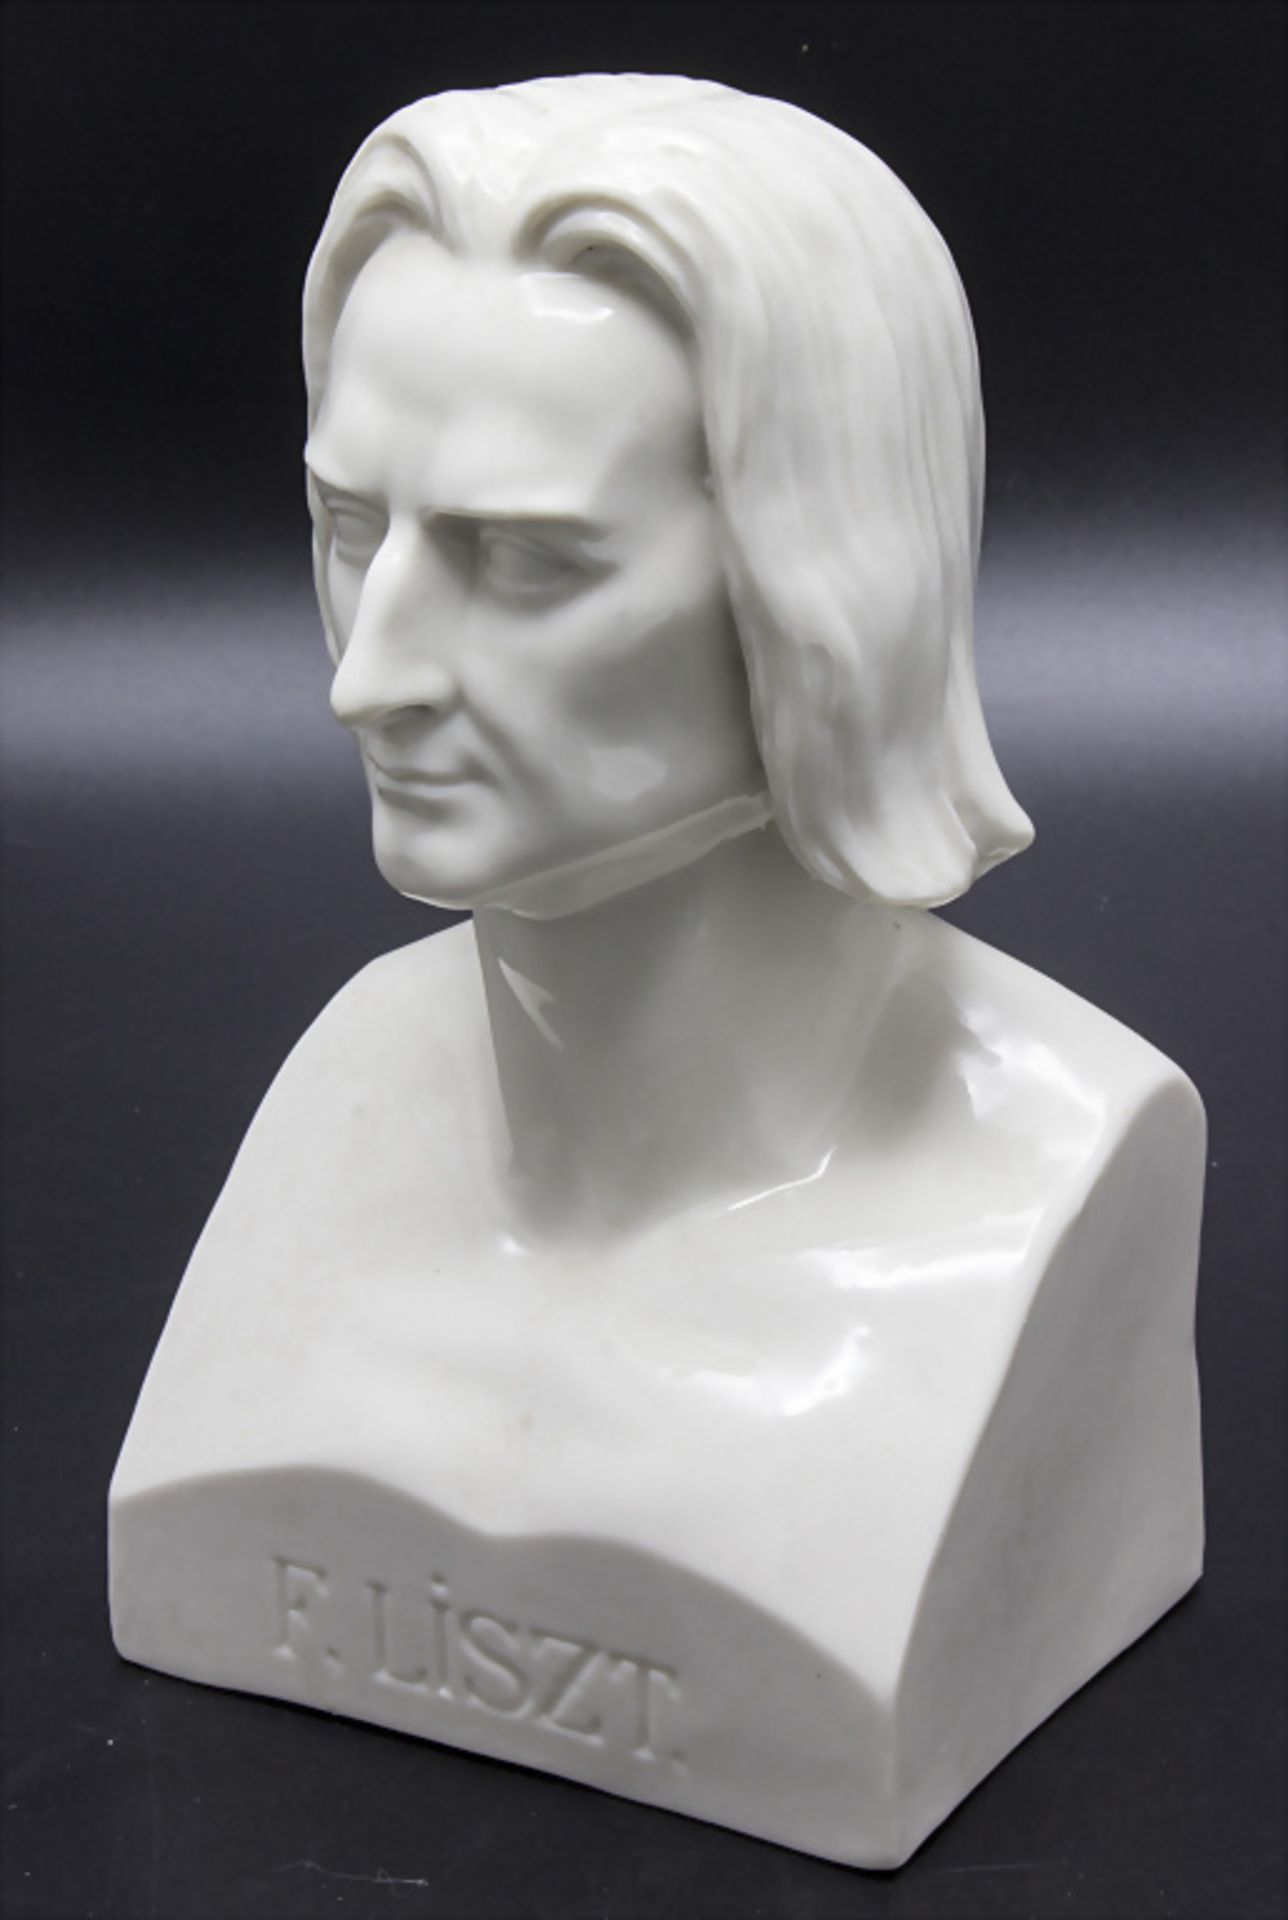 Büste 'Franz Liszt' / A bust of 'Franz Liszt', Dressel, Kister & Co., Passau, Anfang 20. Jh.